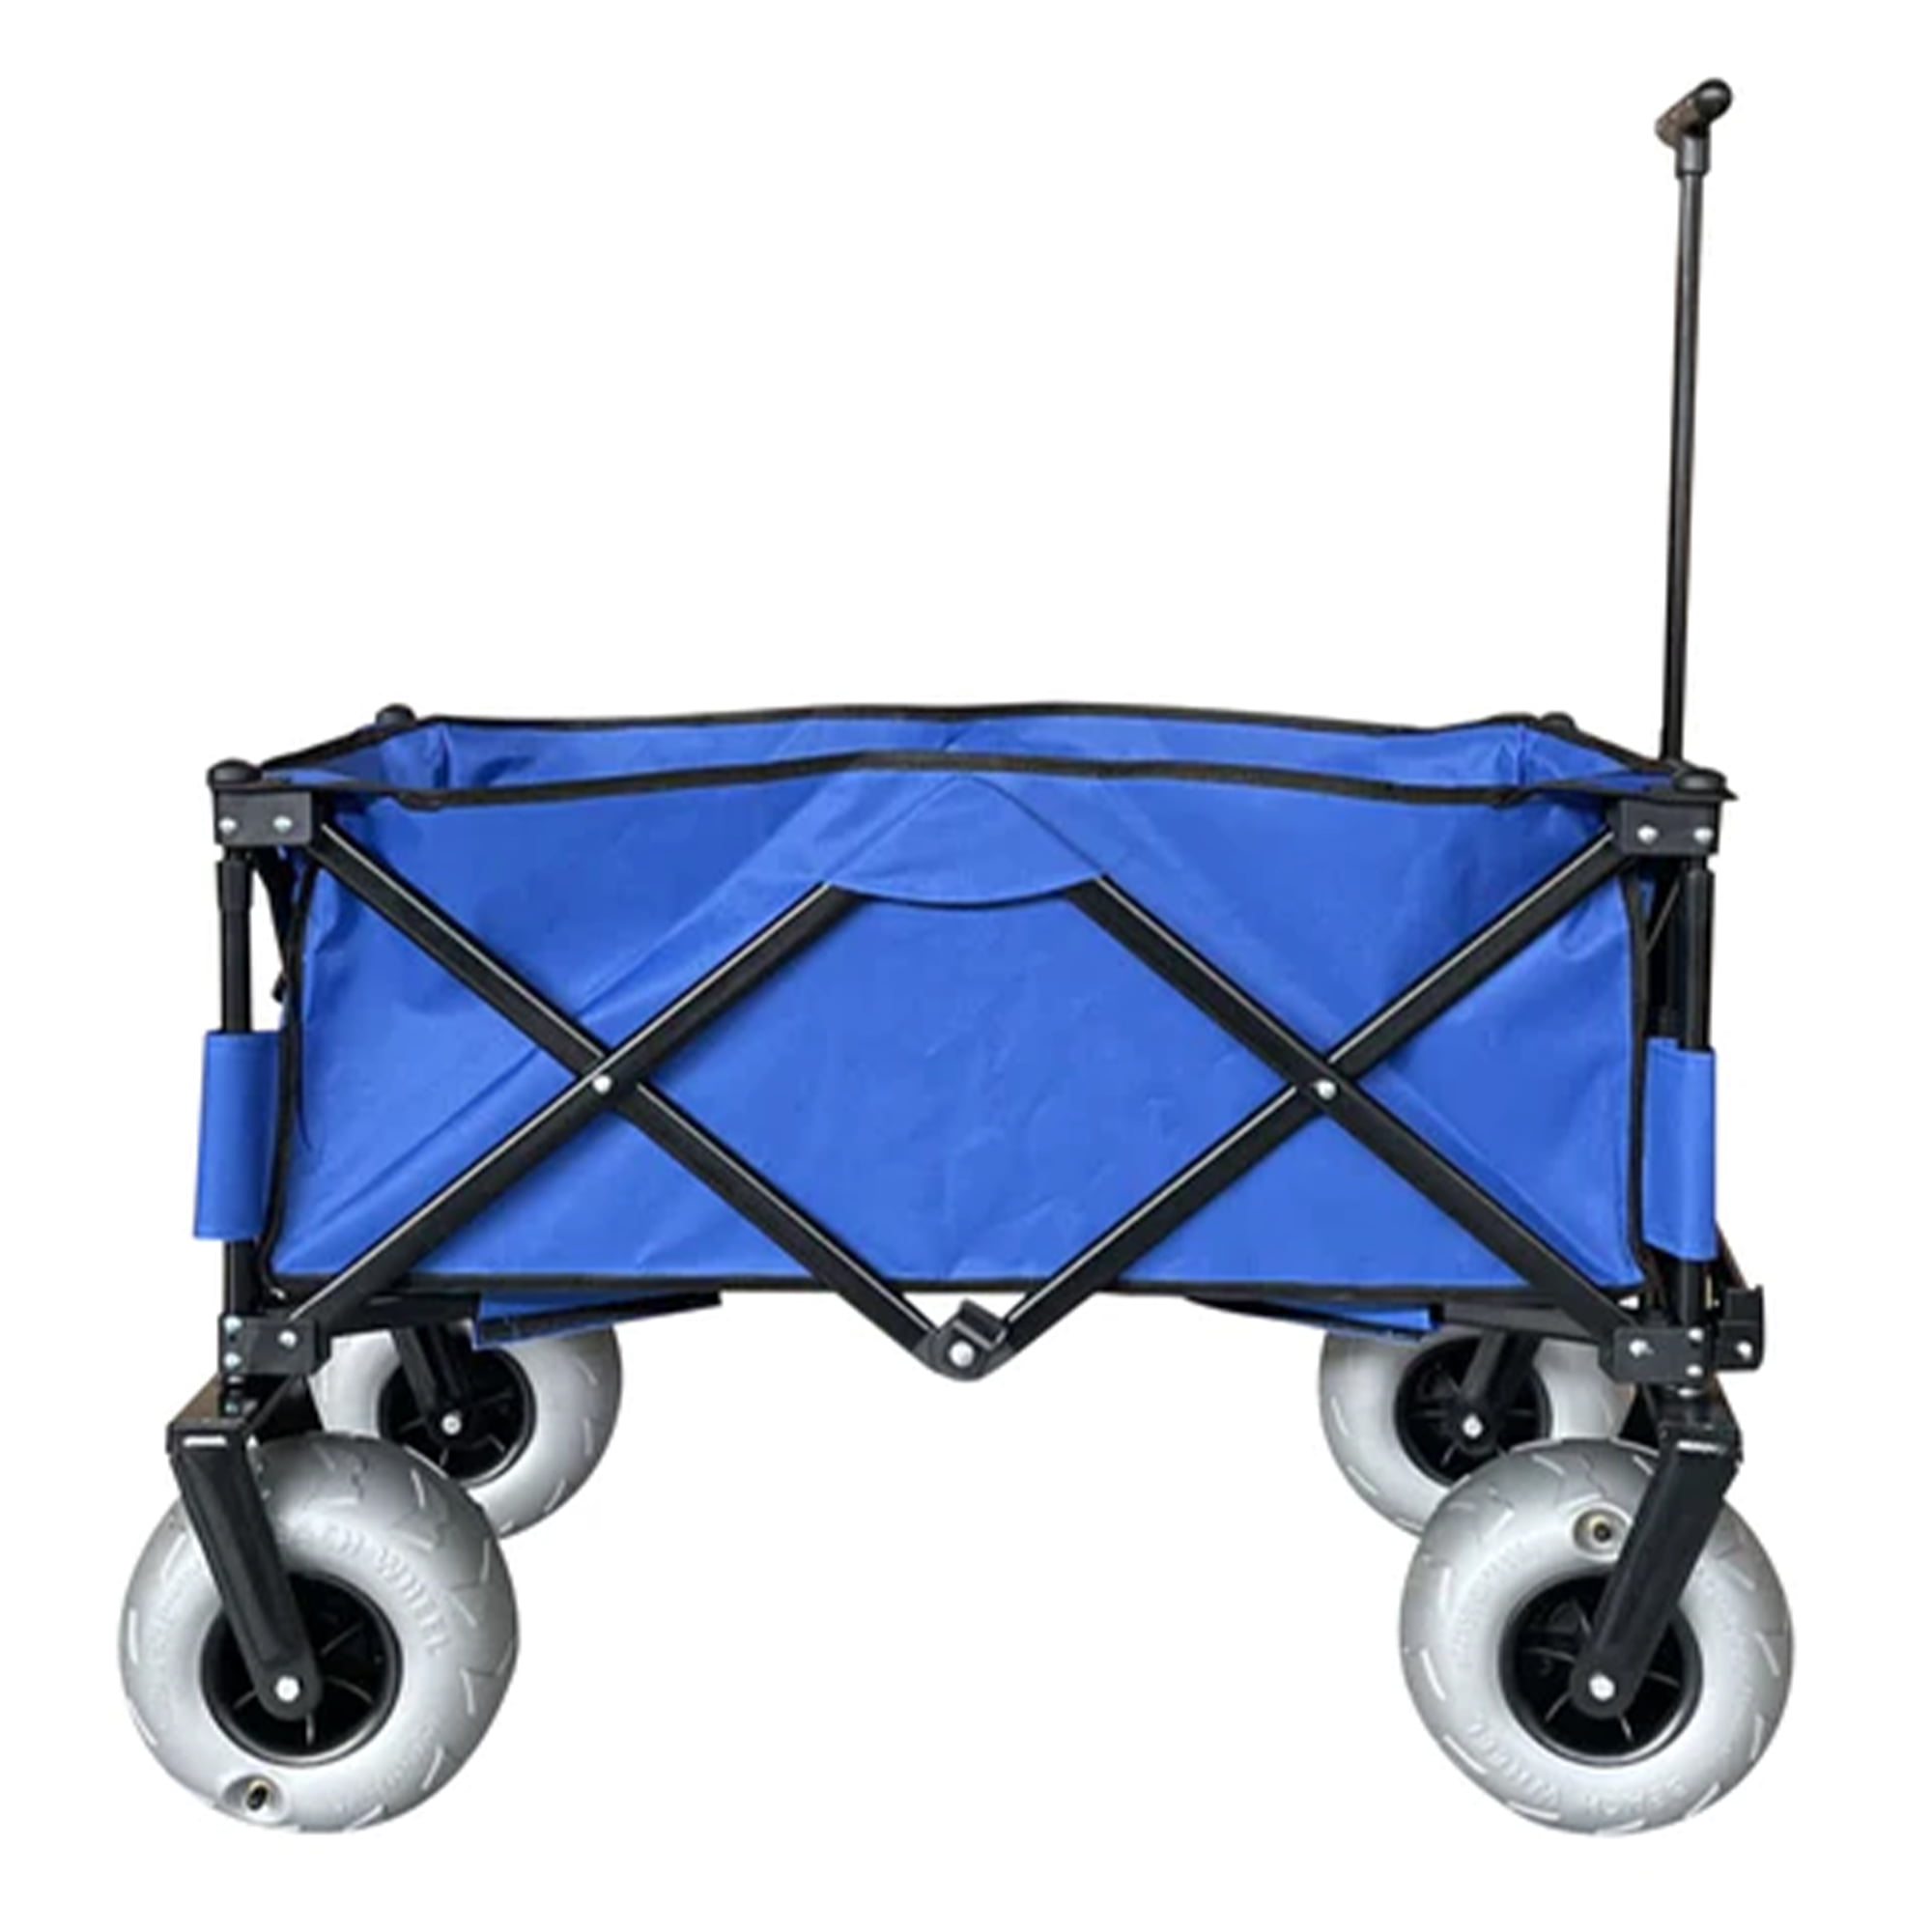  Cuda Tear-Resistant Chum Bag, 5 Gallon, Blue, 15.8 x 1.4 x  13.8 inches, (23022) : Sports & Outdoors